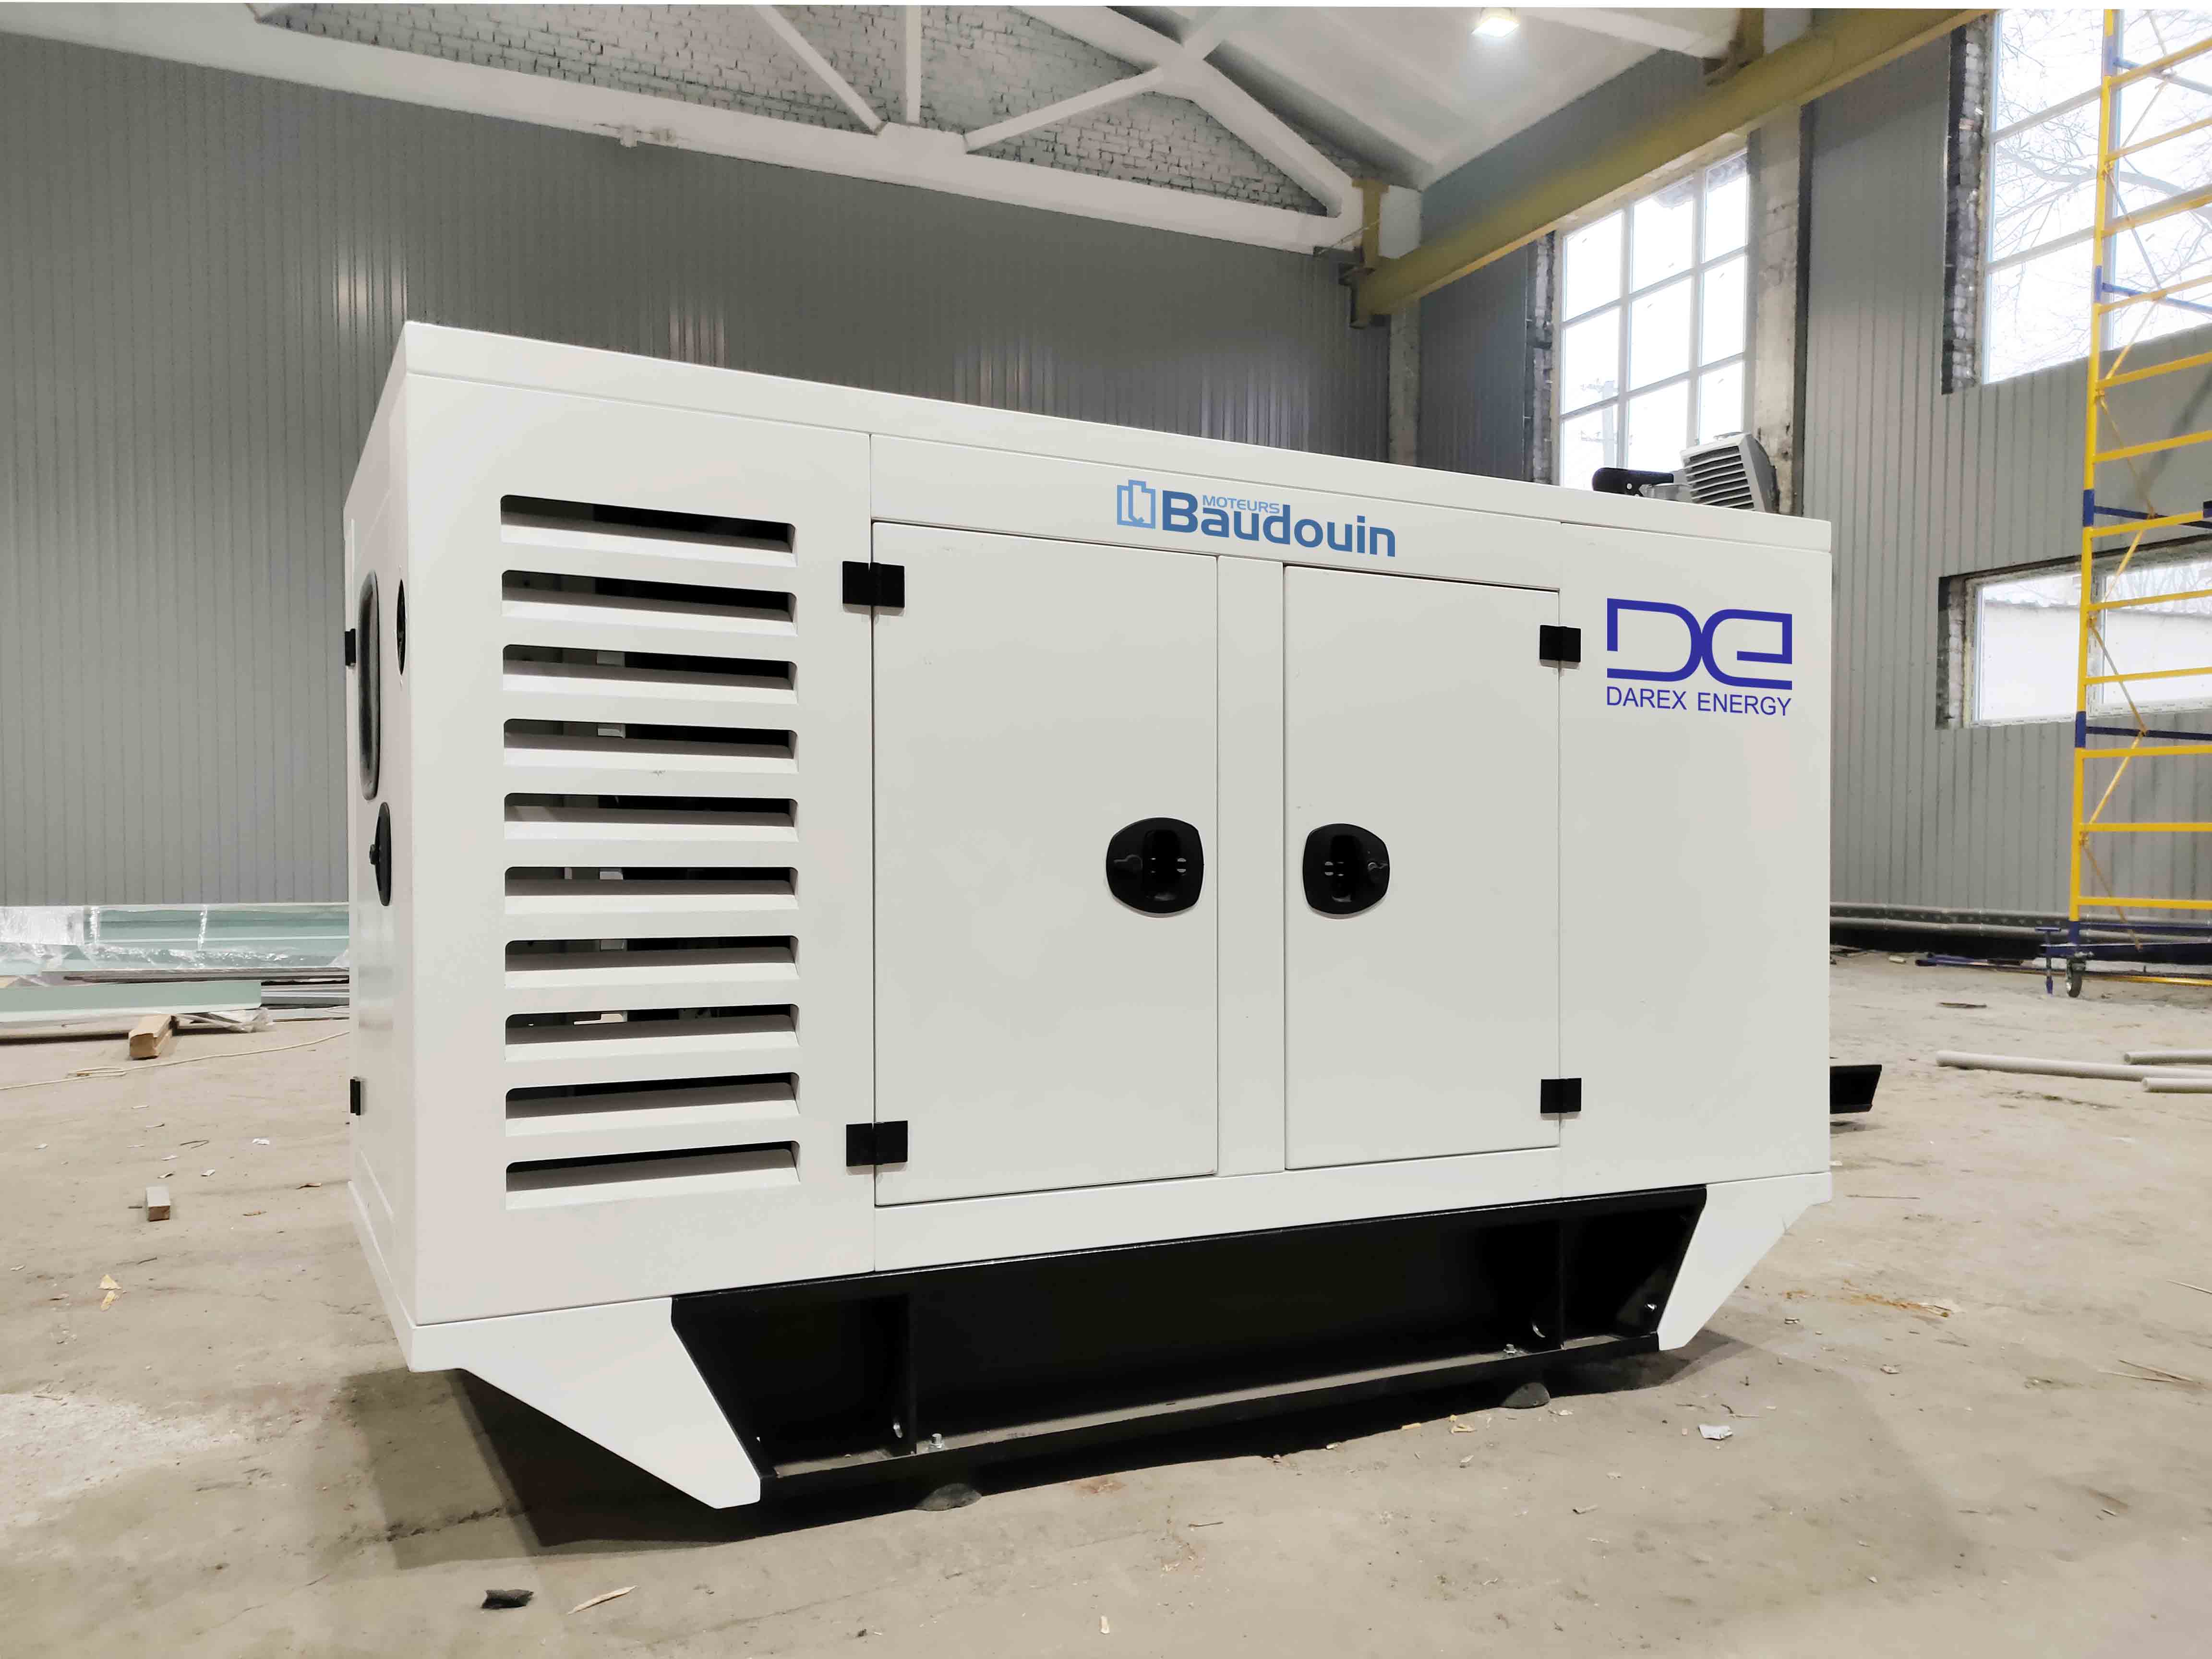 Дизельные генераторы DAREX ENERGY с двигателями BAUDOUIN – собственное производство компании ДАРЕКС-ЭНЕРГО